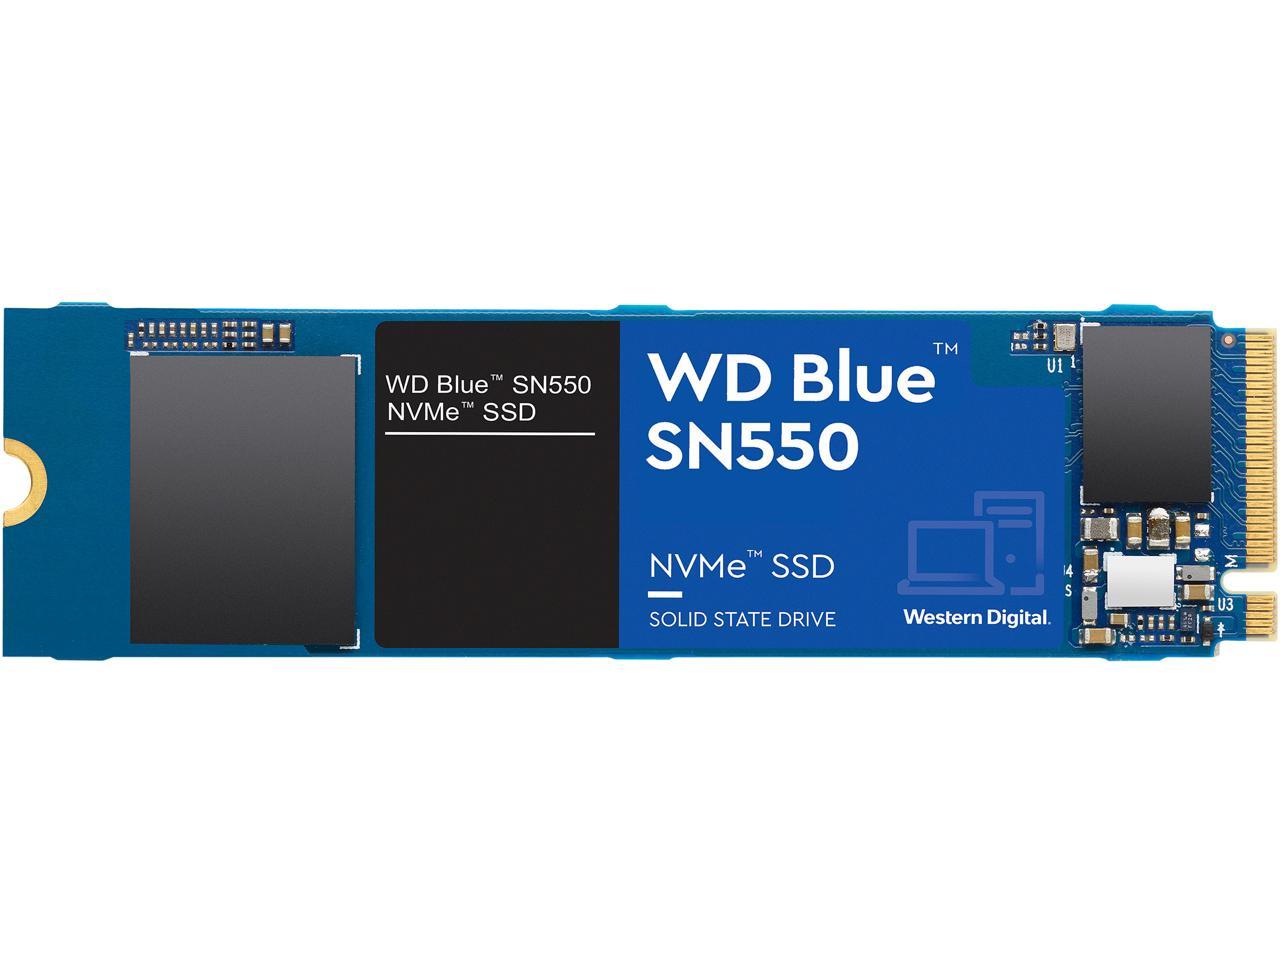 500GB Western Digital WD Blue SN550 NVMe SSD @Newegg $46